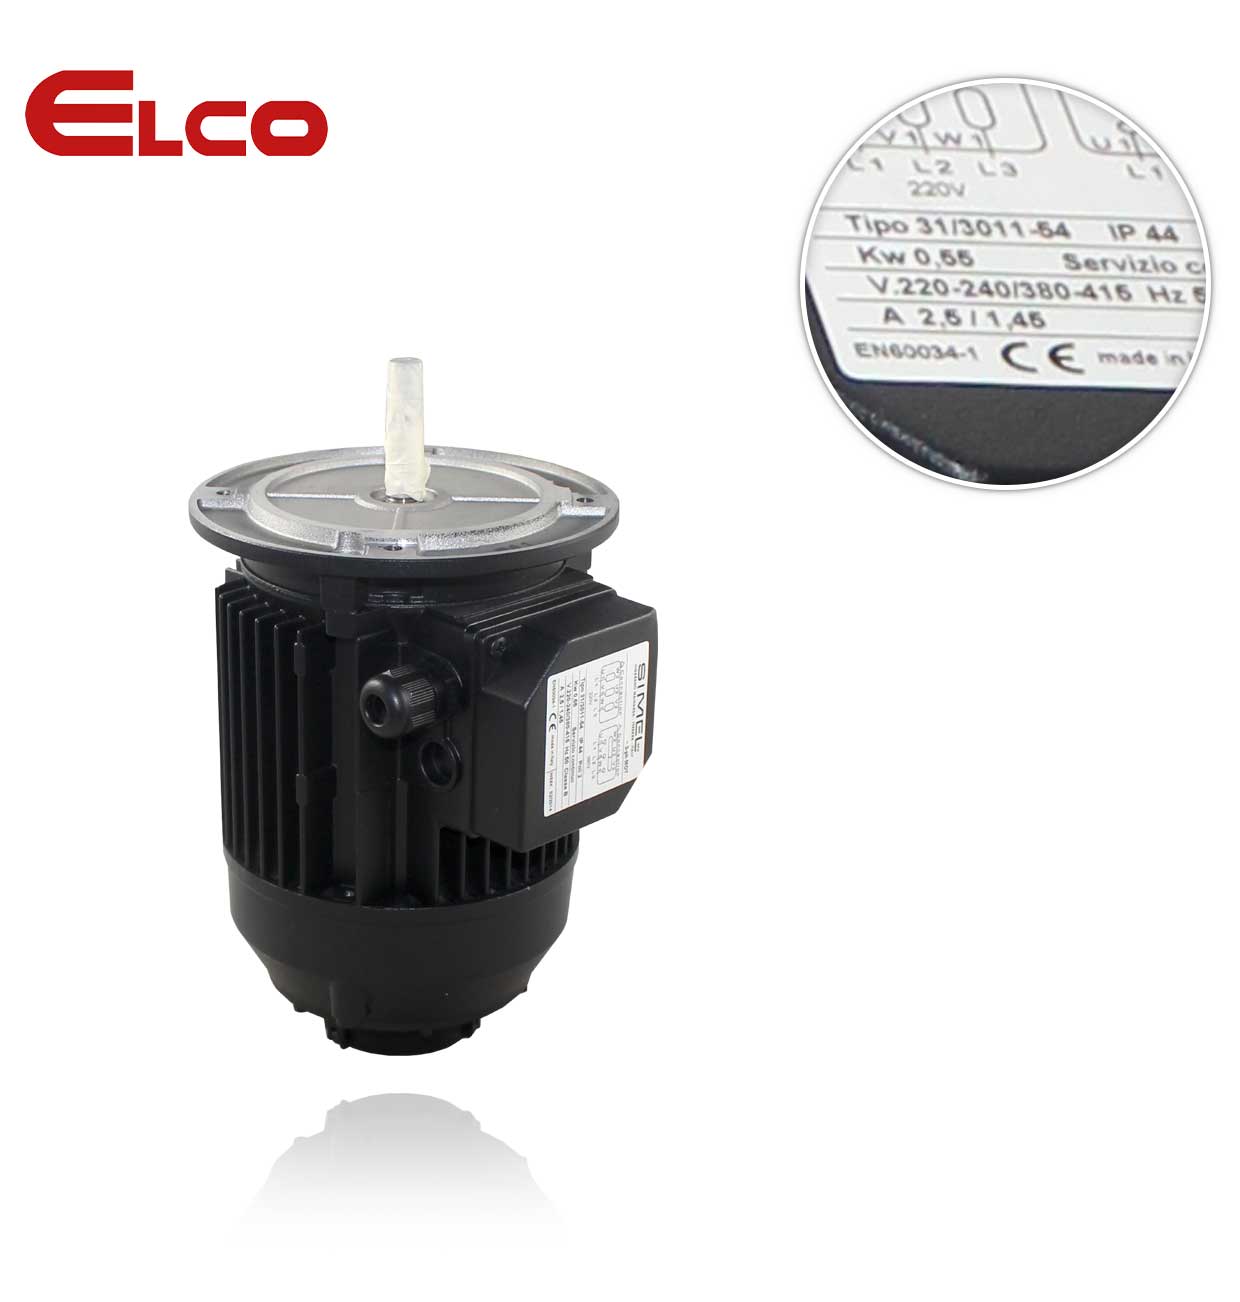 ELCO/ ECOFLAM  0.55KW 230-400 V D19 T31/3011-54 MOTOR